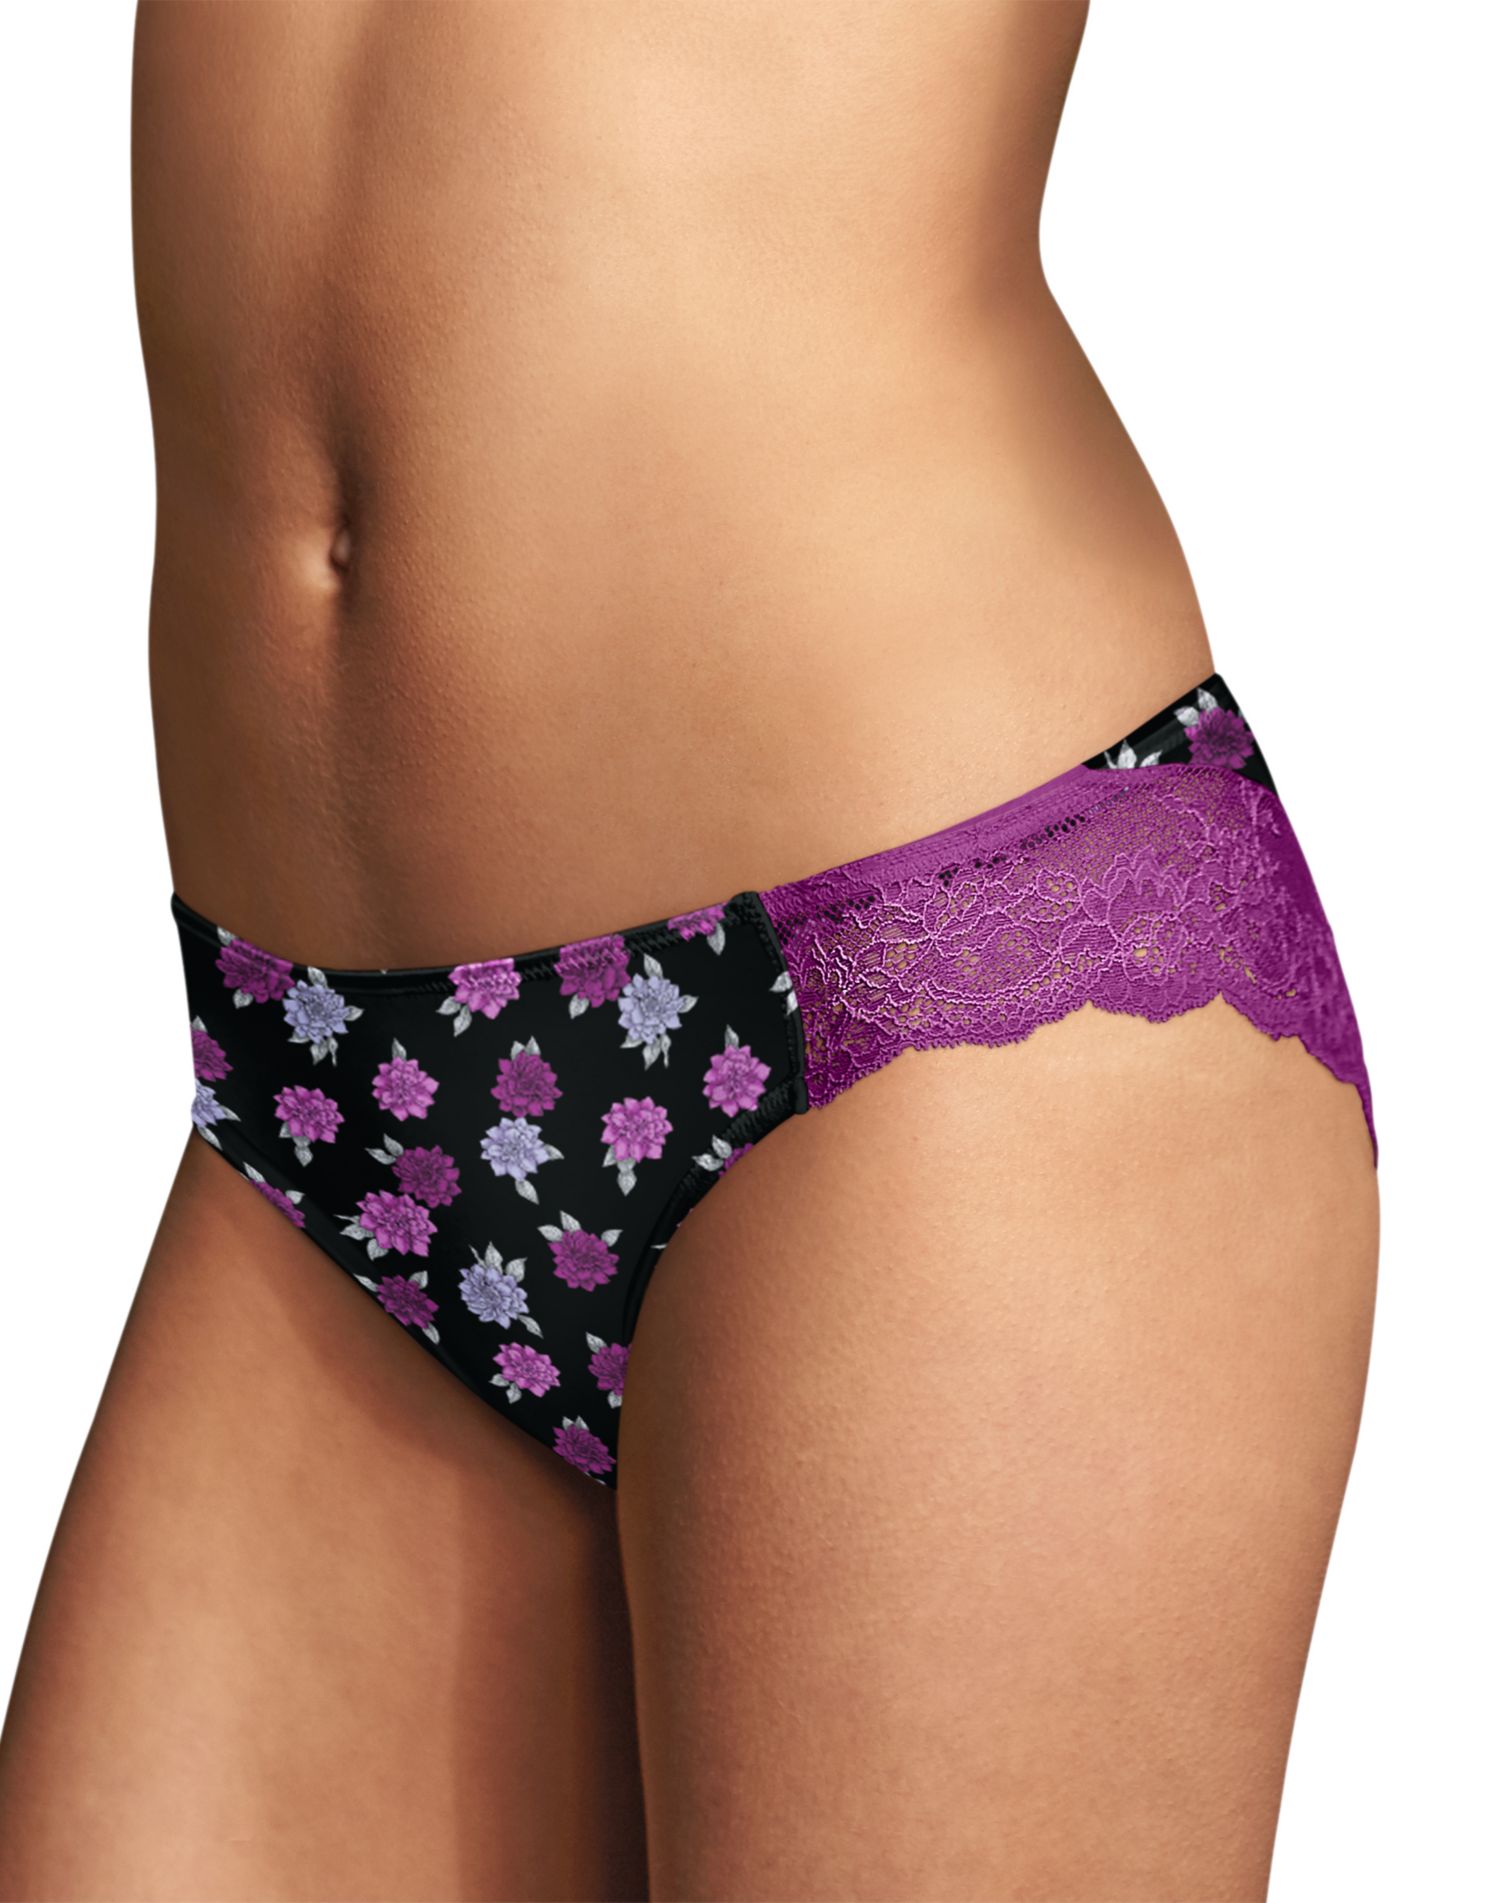 Zest Purple Lace Thong